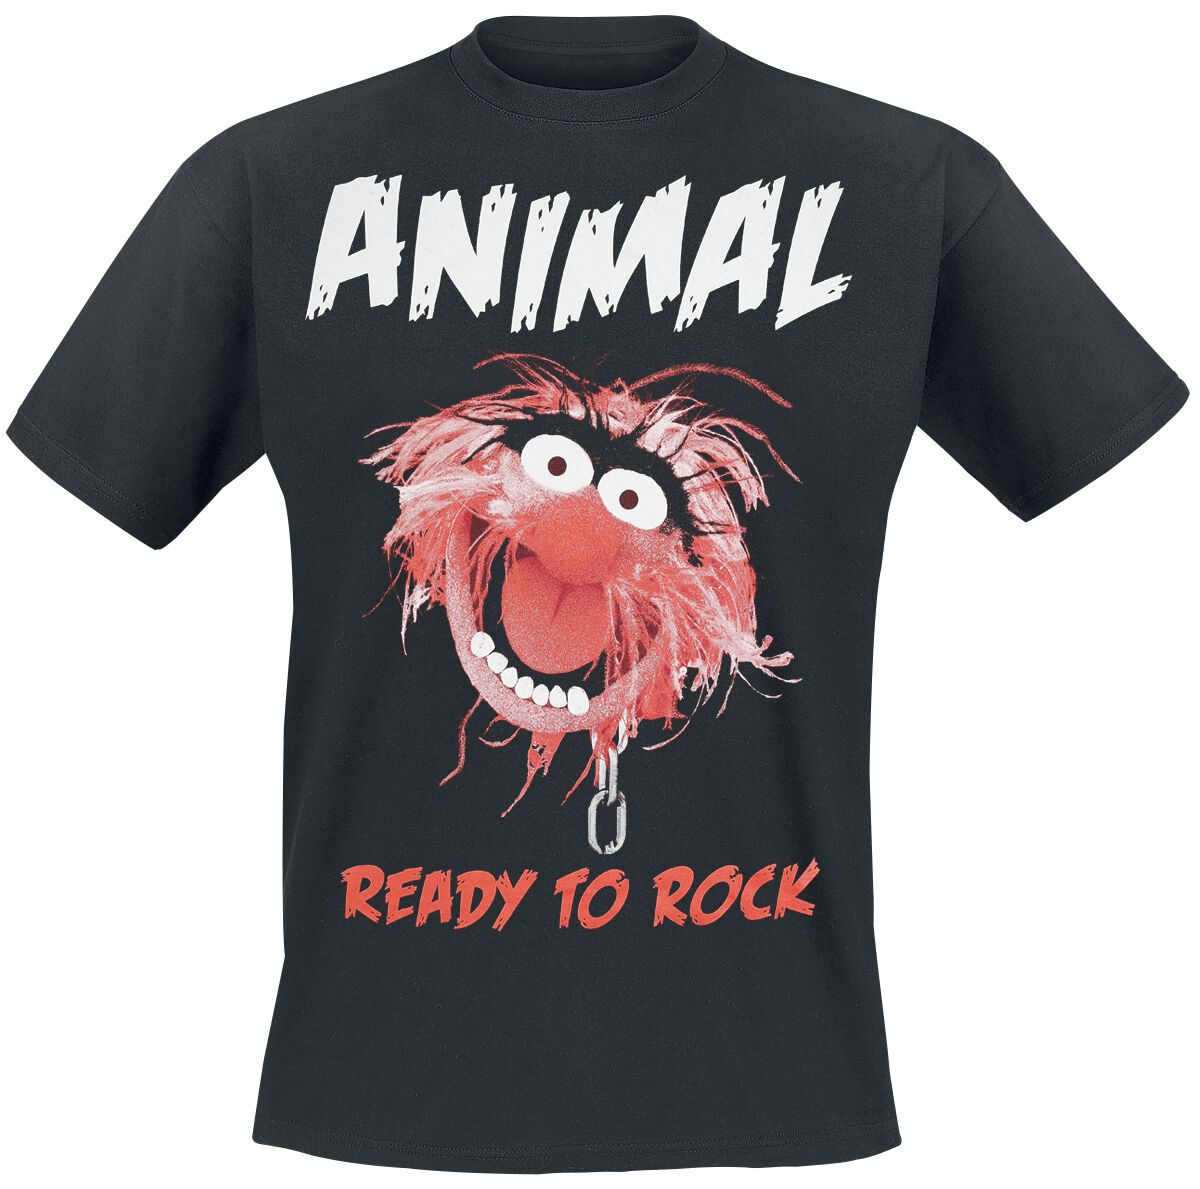 Die Muppets T-Shirt - Animal - Ready To Rock - S bis XXL - für Männer - Größe XXL - schwarz  - EMP exklusives Merchandise!